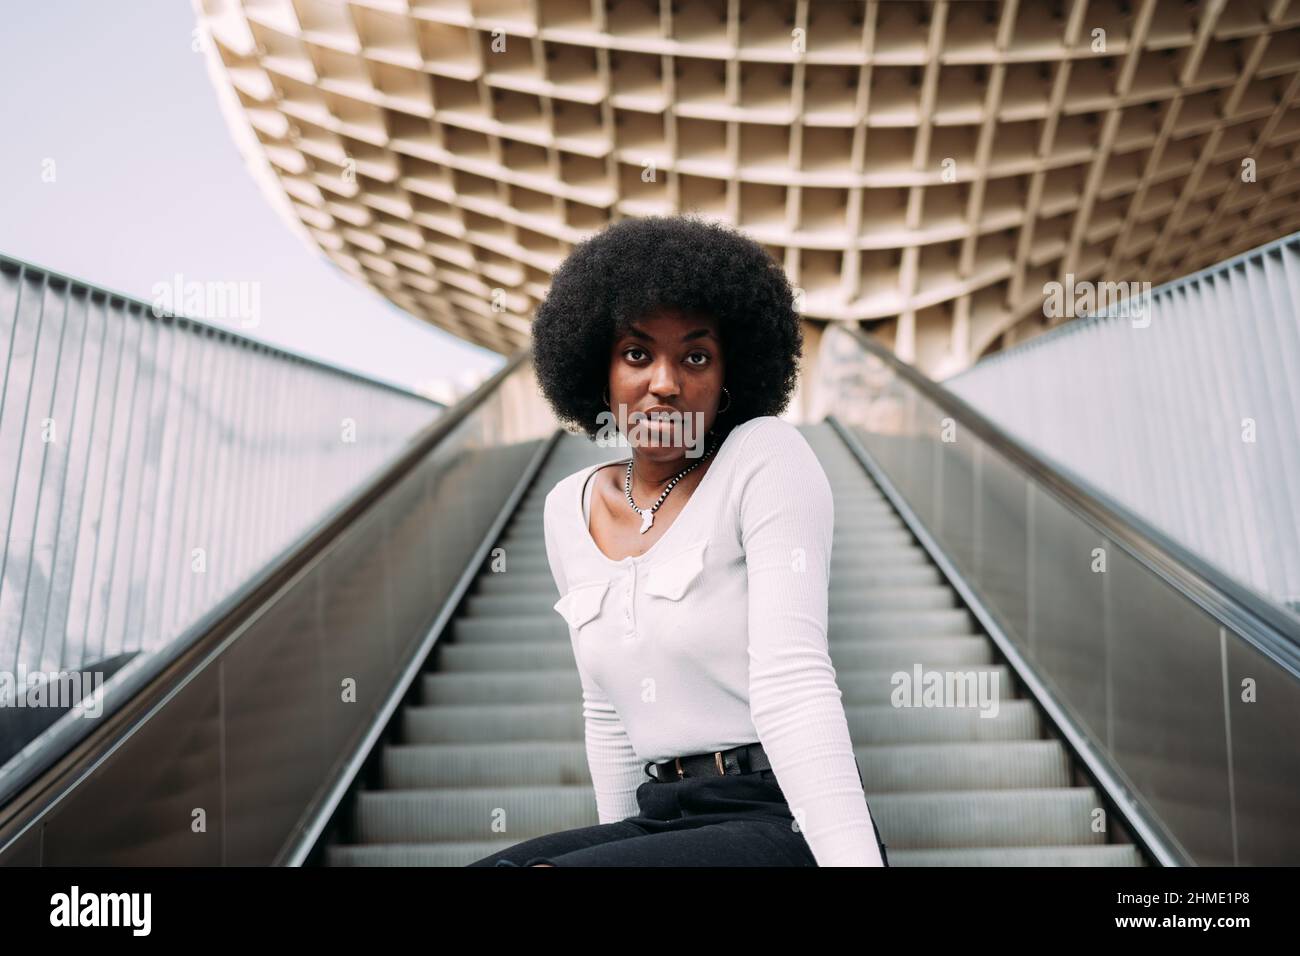 Modetrportrait einer jungen schwarzen Frau, die auf einer Rolltreppe auf der Straße sitzt Stockfoto